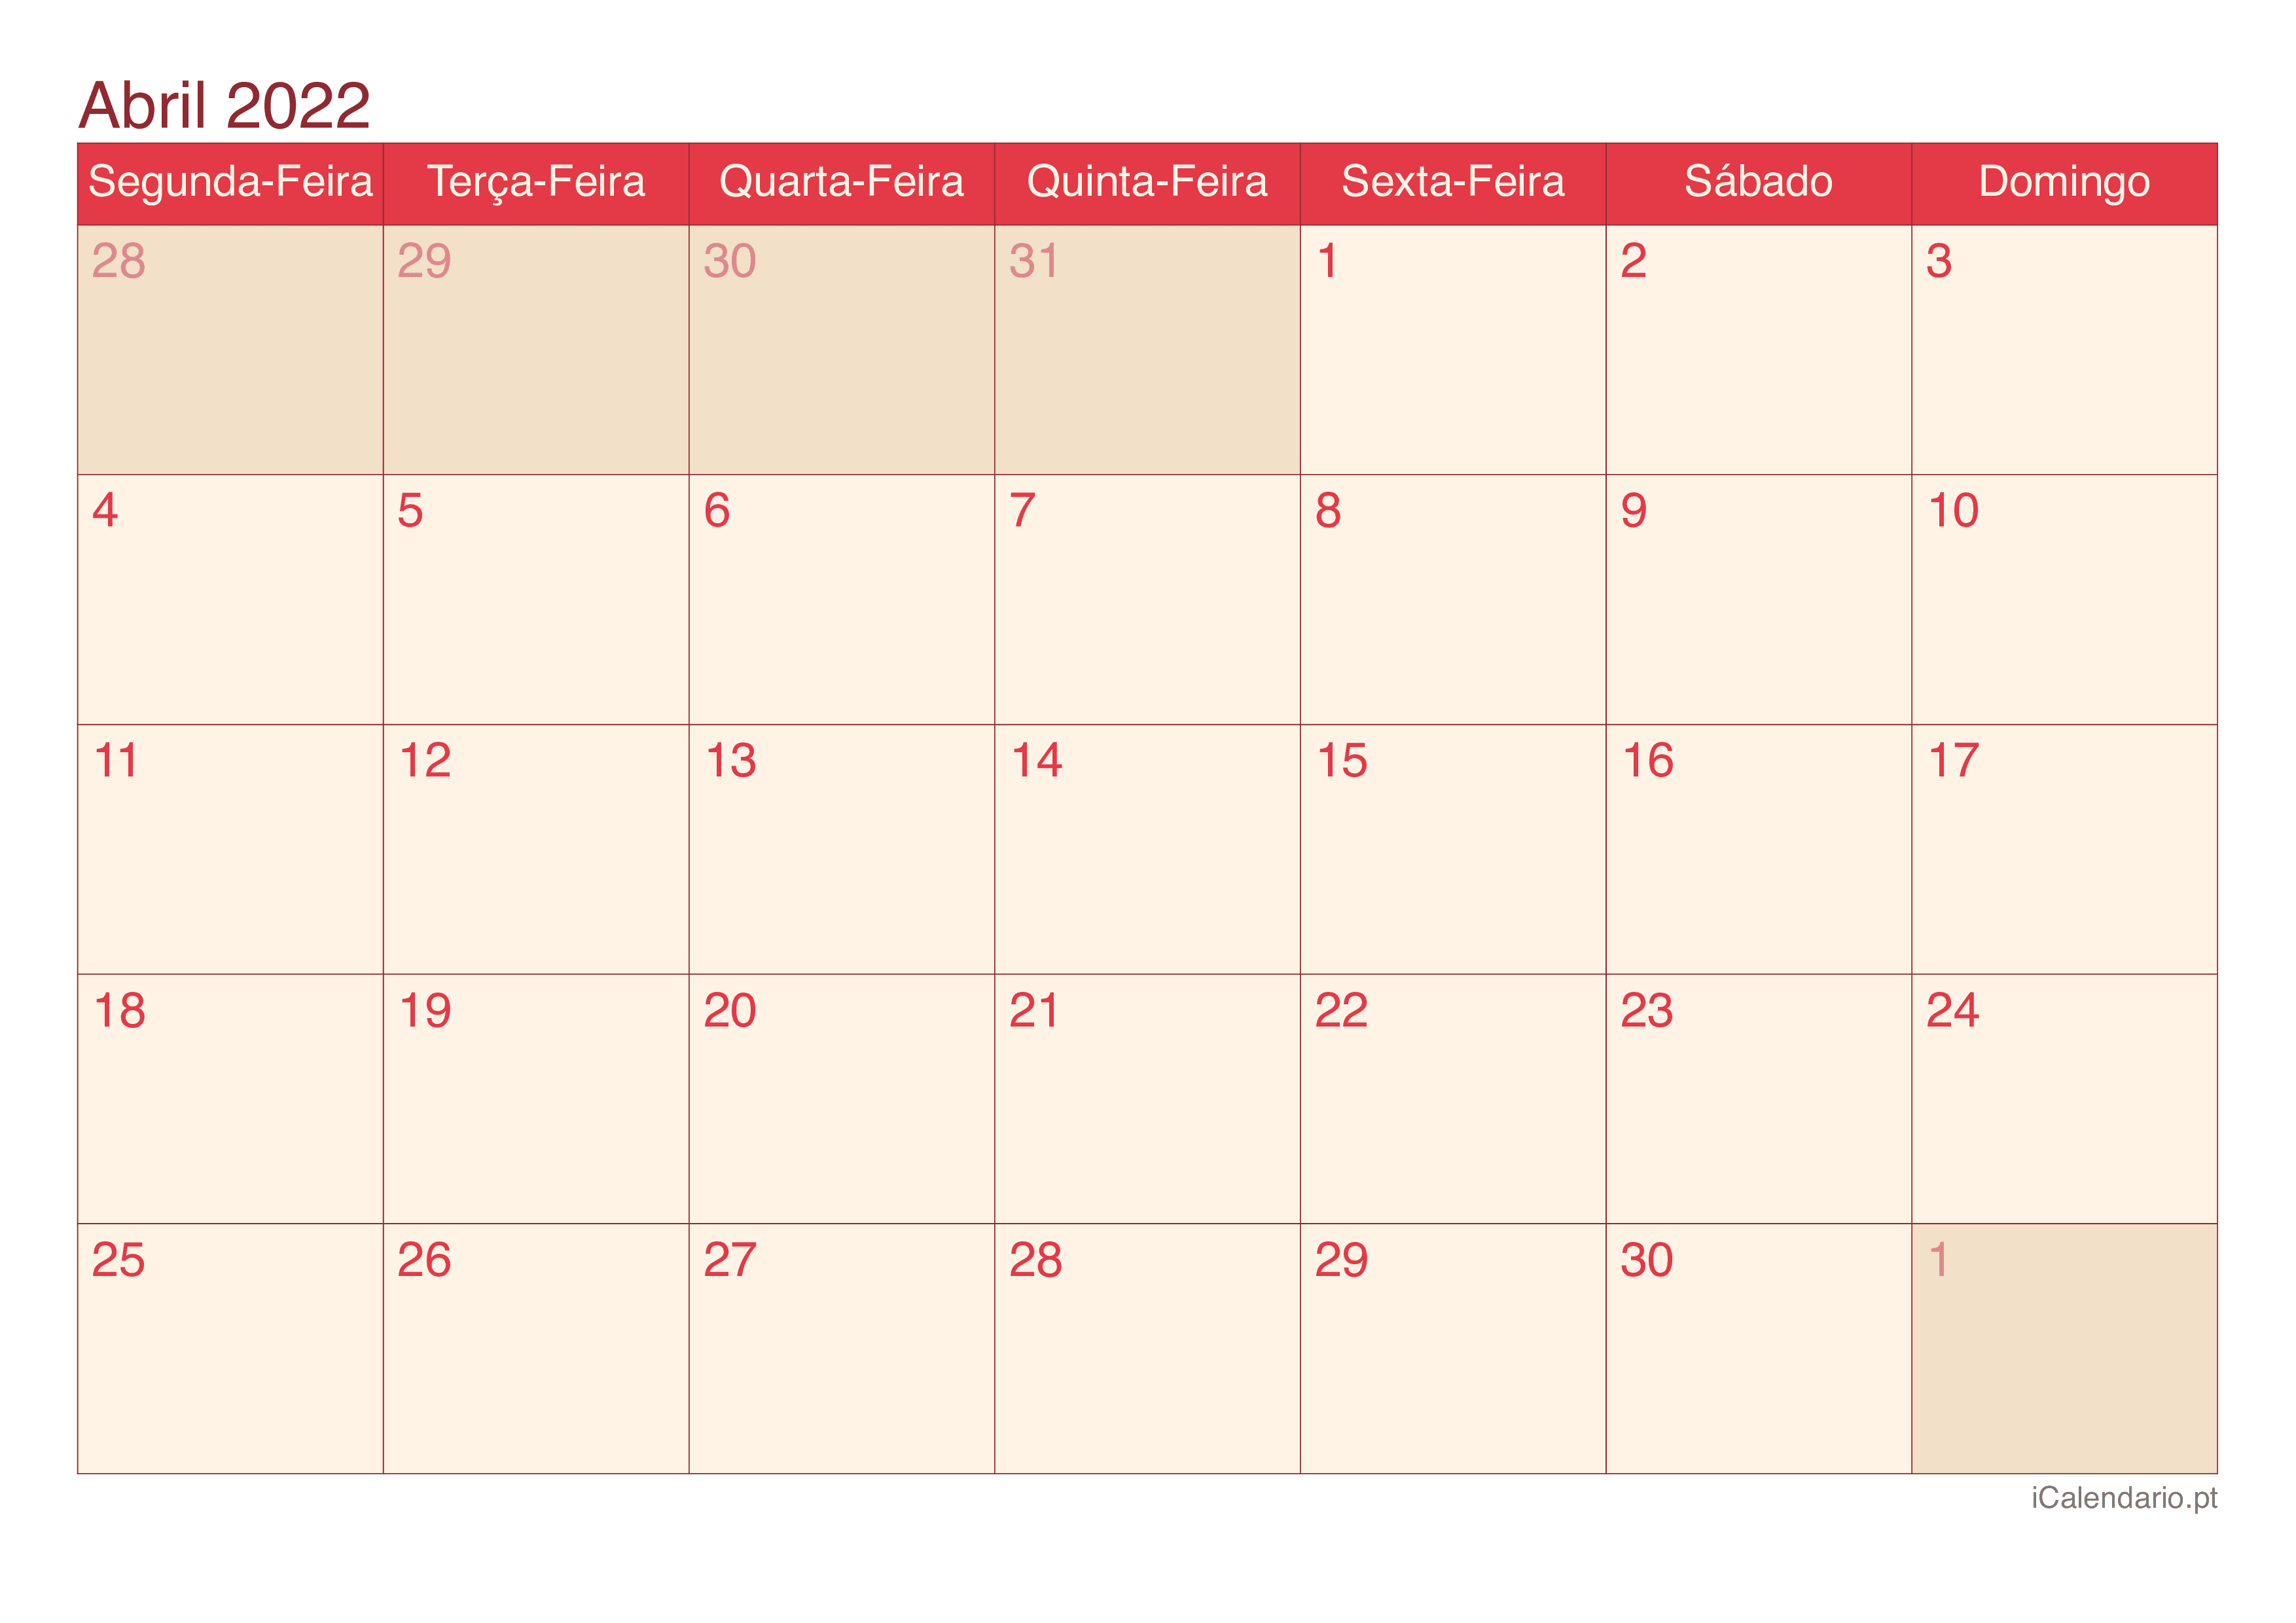 Calendário de abril 2022 - Cherry